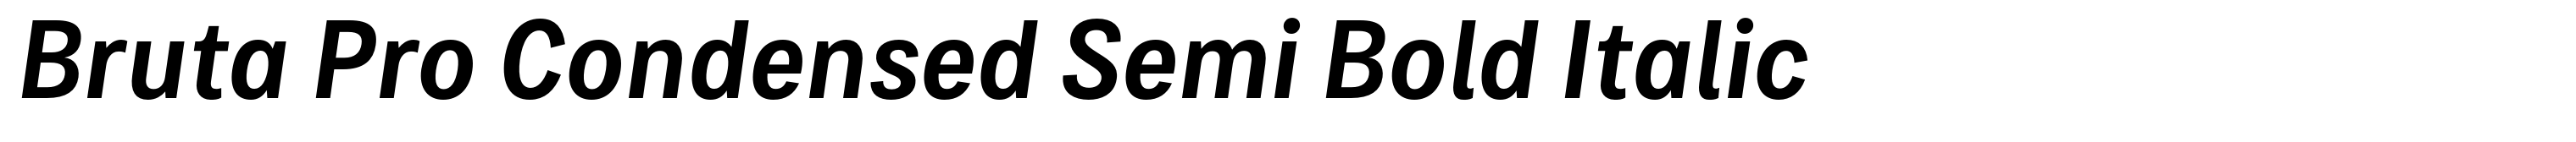 Bruta Pro Condensed Semi Bold Italic